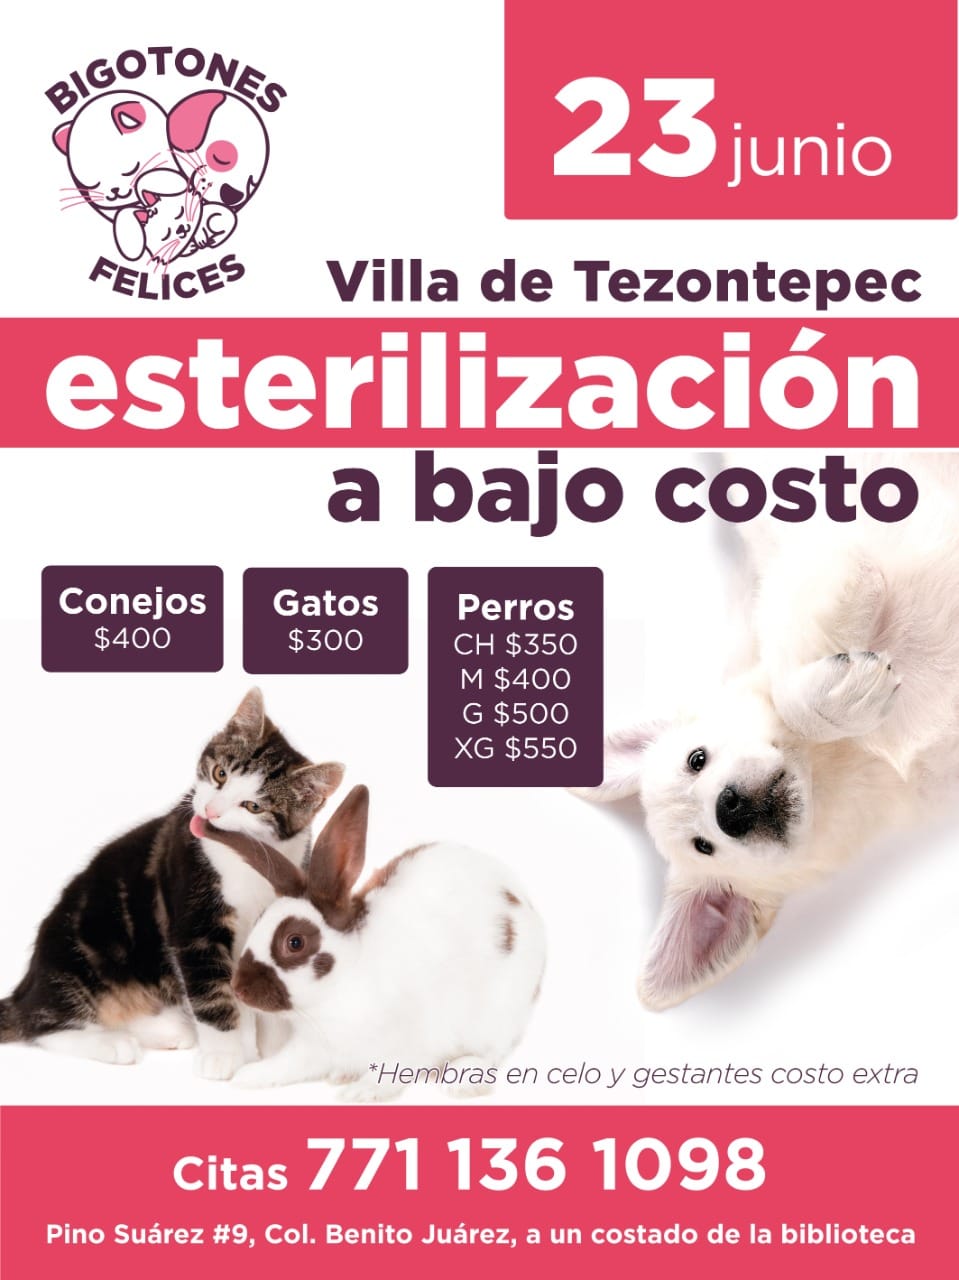 Campaña de esterilización de bajo costo en villa de tezontepec